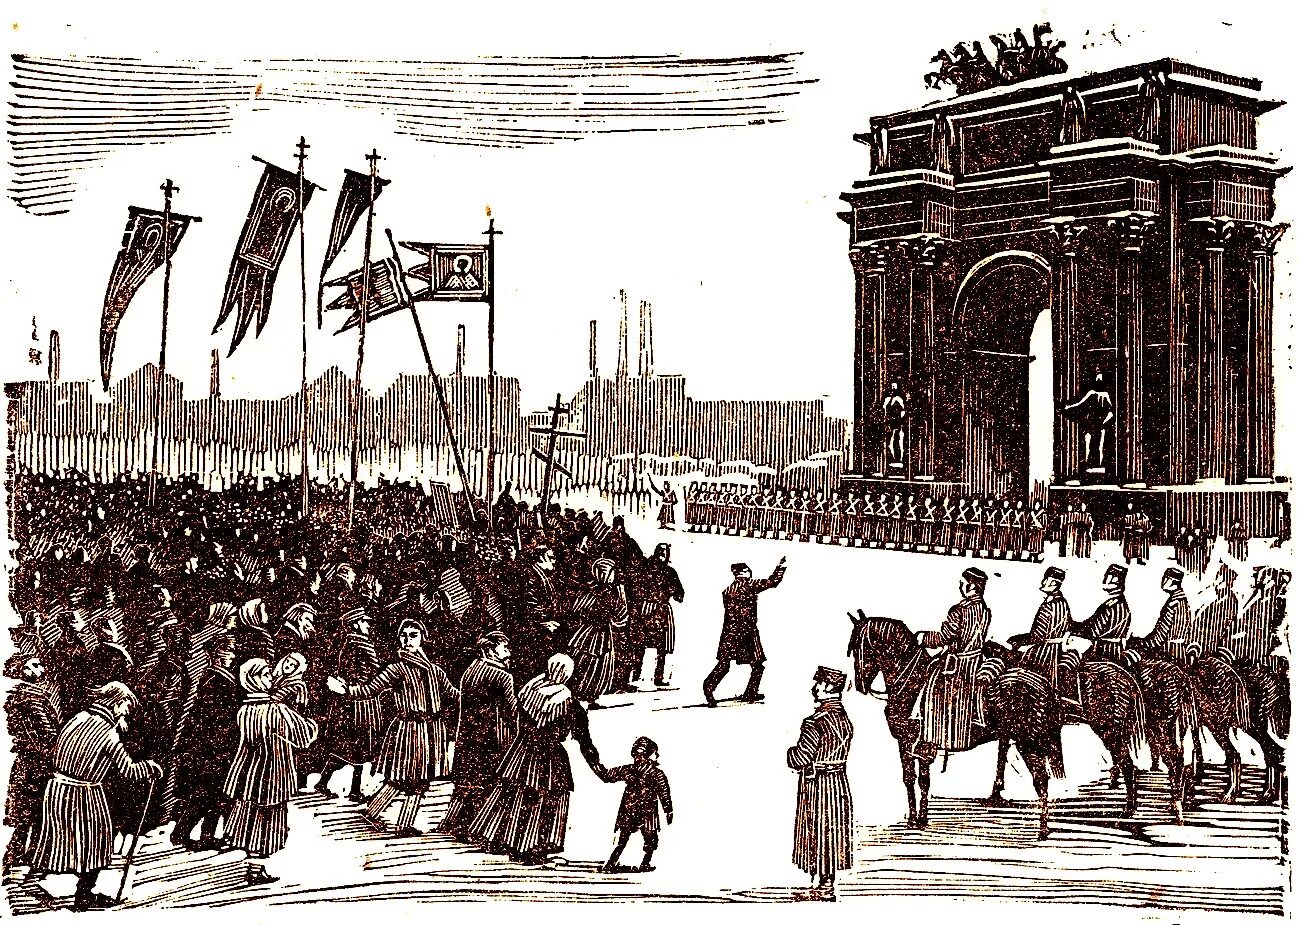 Революция 1905 года кровавое воскресенье